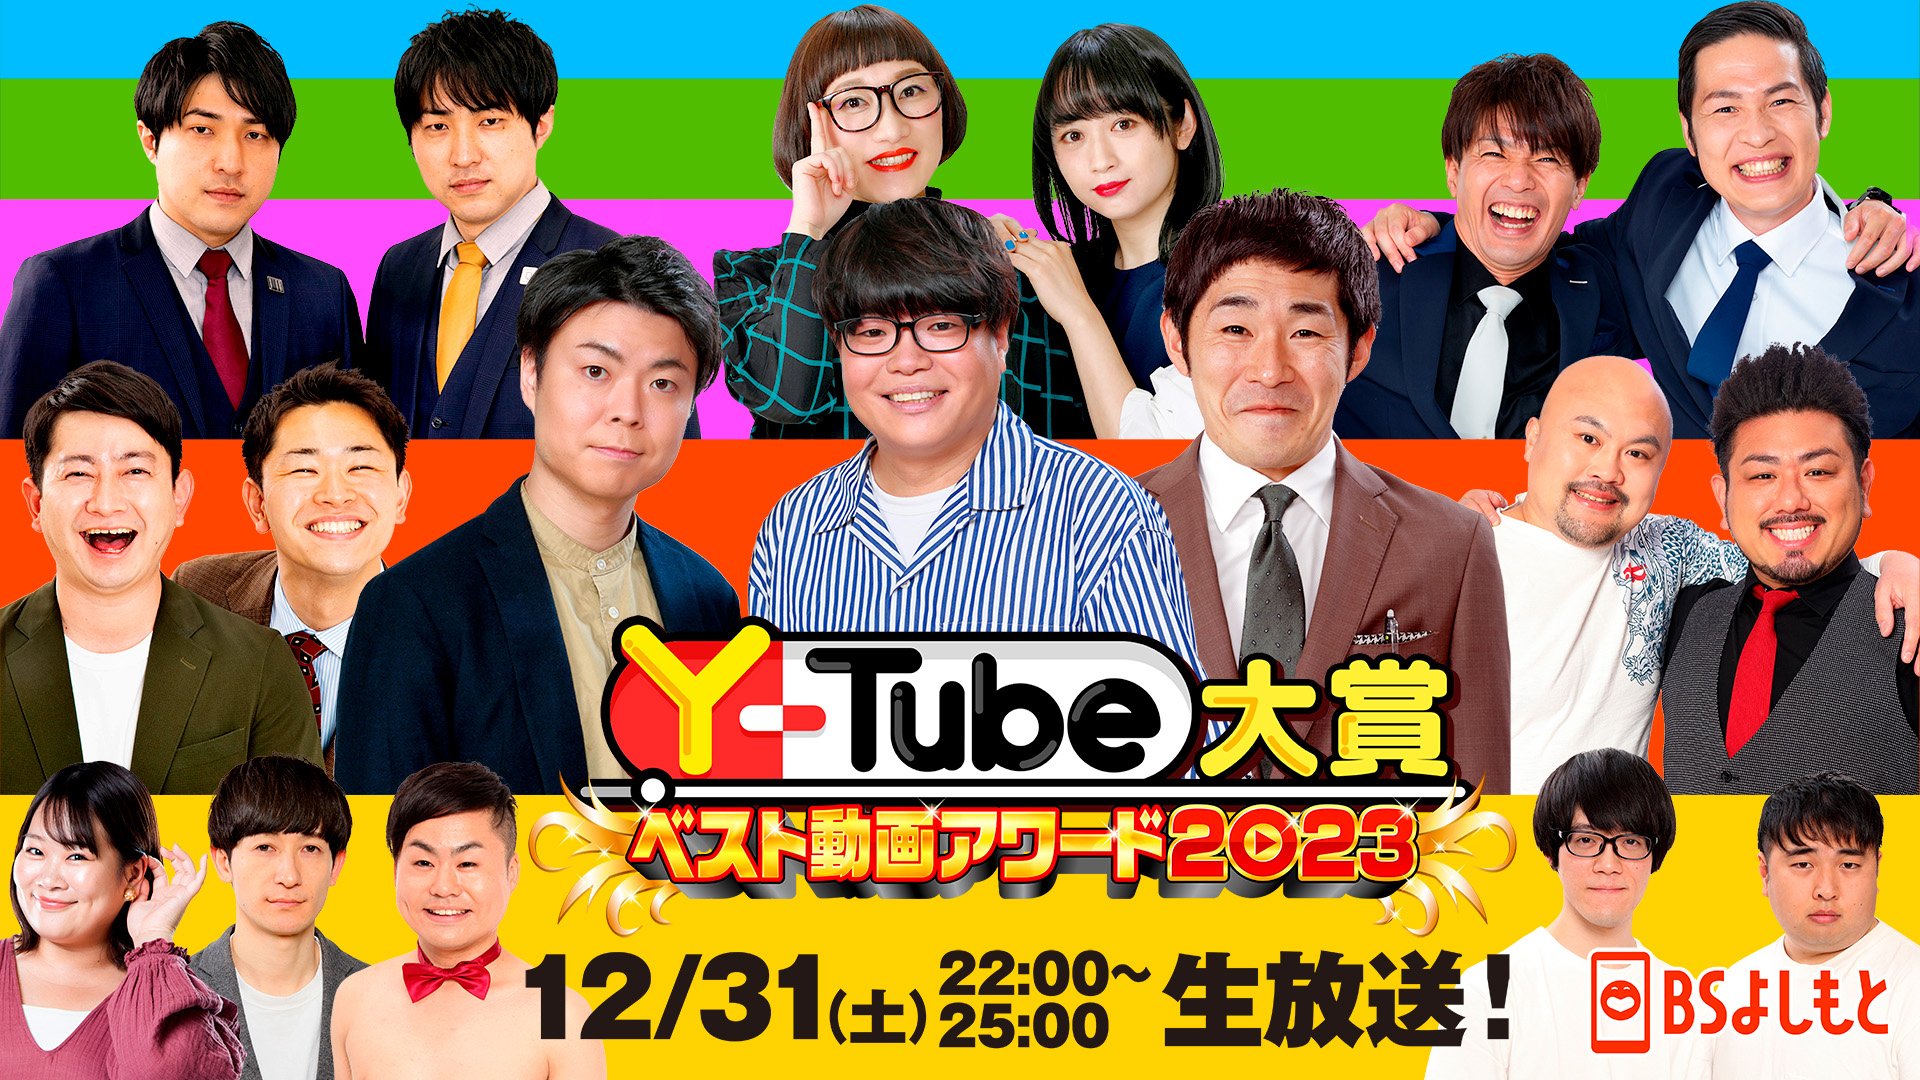 Y-Tube大賞 ベスト動画アワード2023